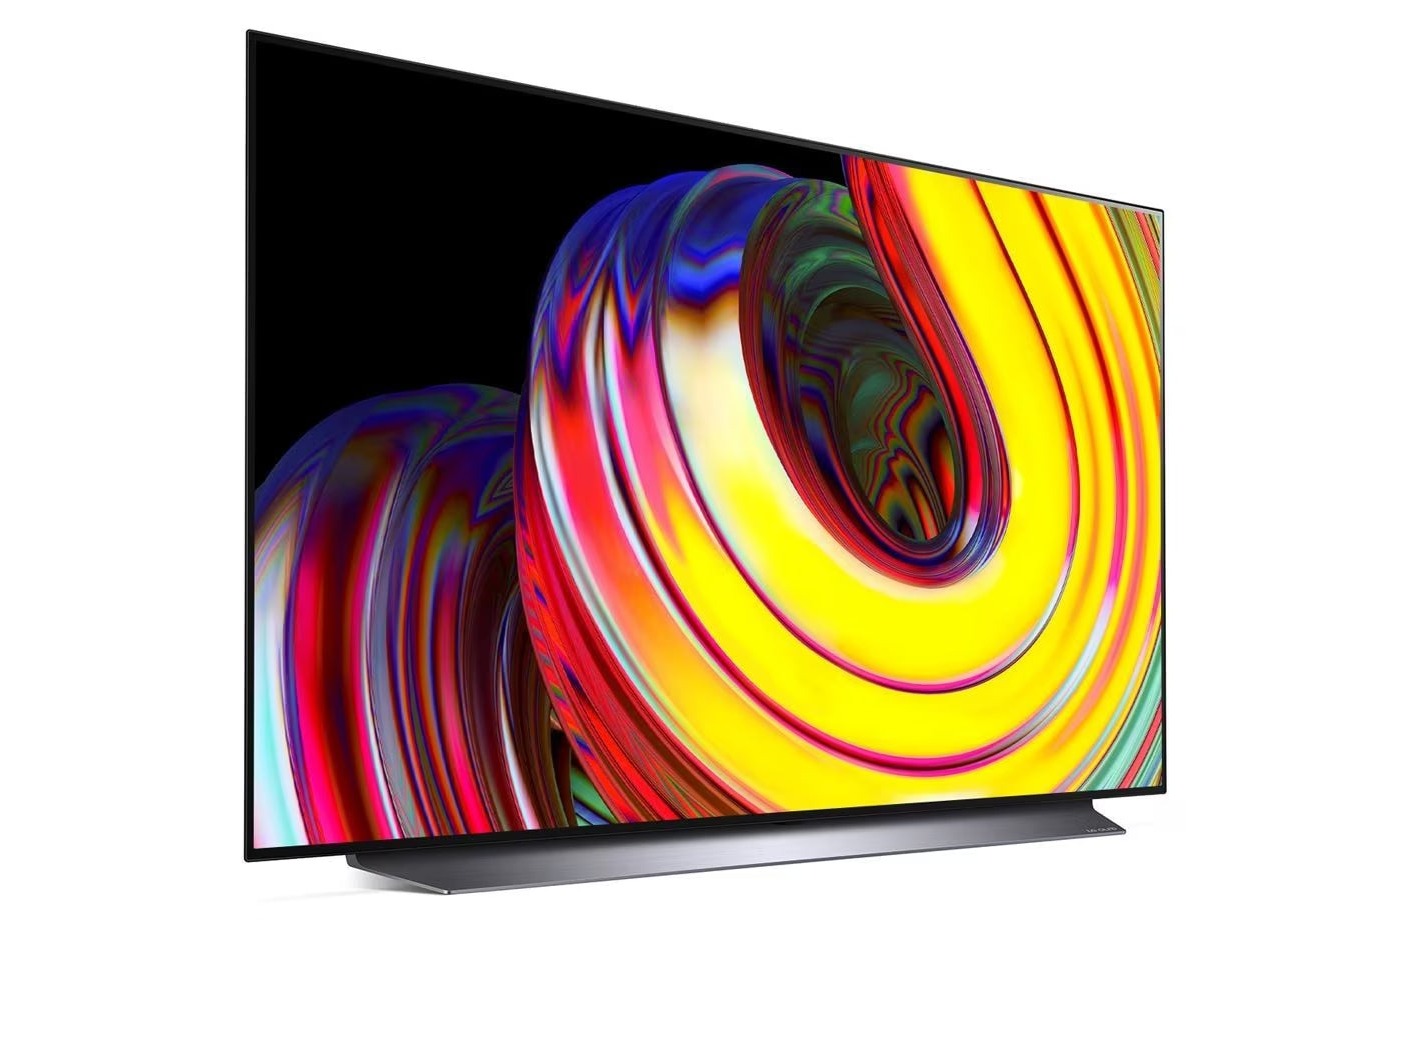 LG 77CS oled televízió talpon, jobbra fodítva lilás sárga árnyalatú absztrakt ábra a kijelzőn.